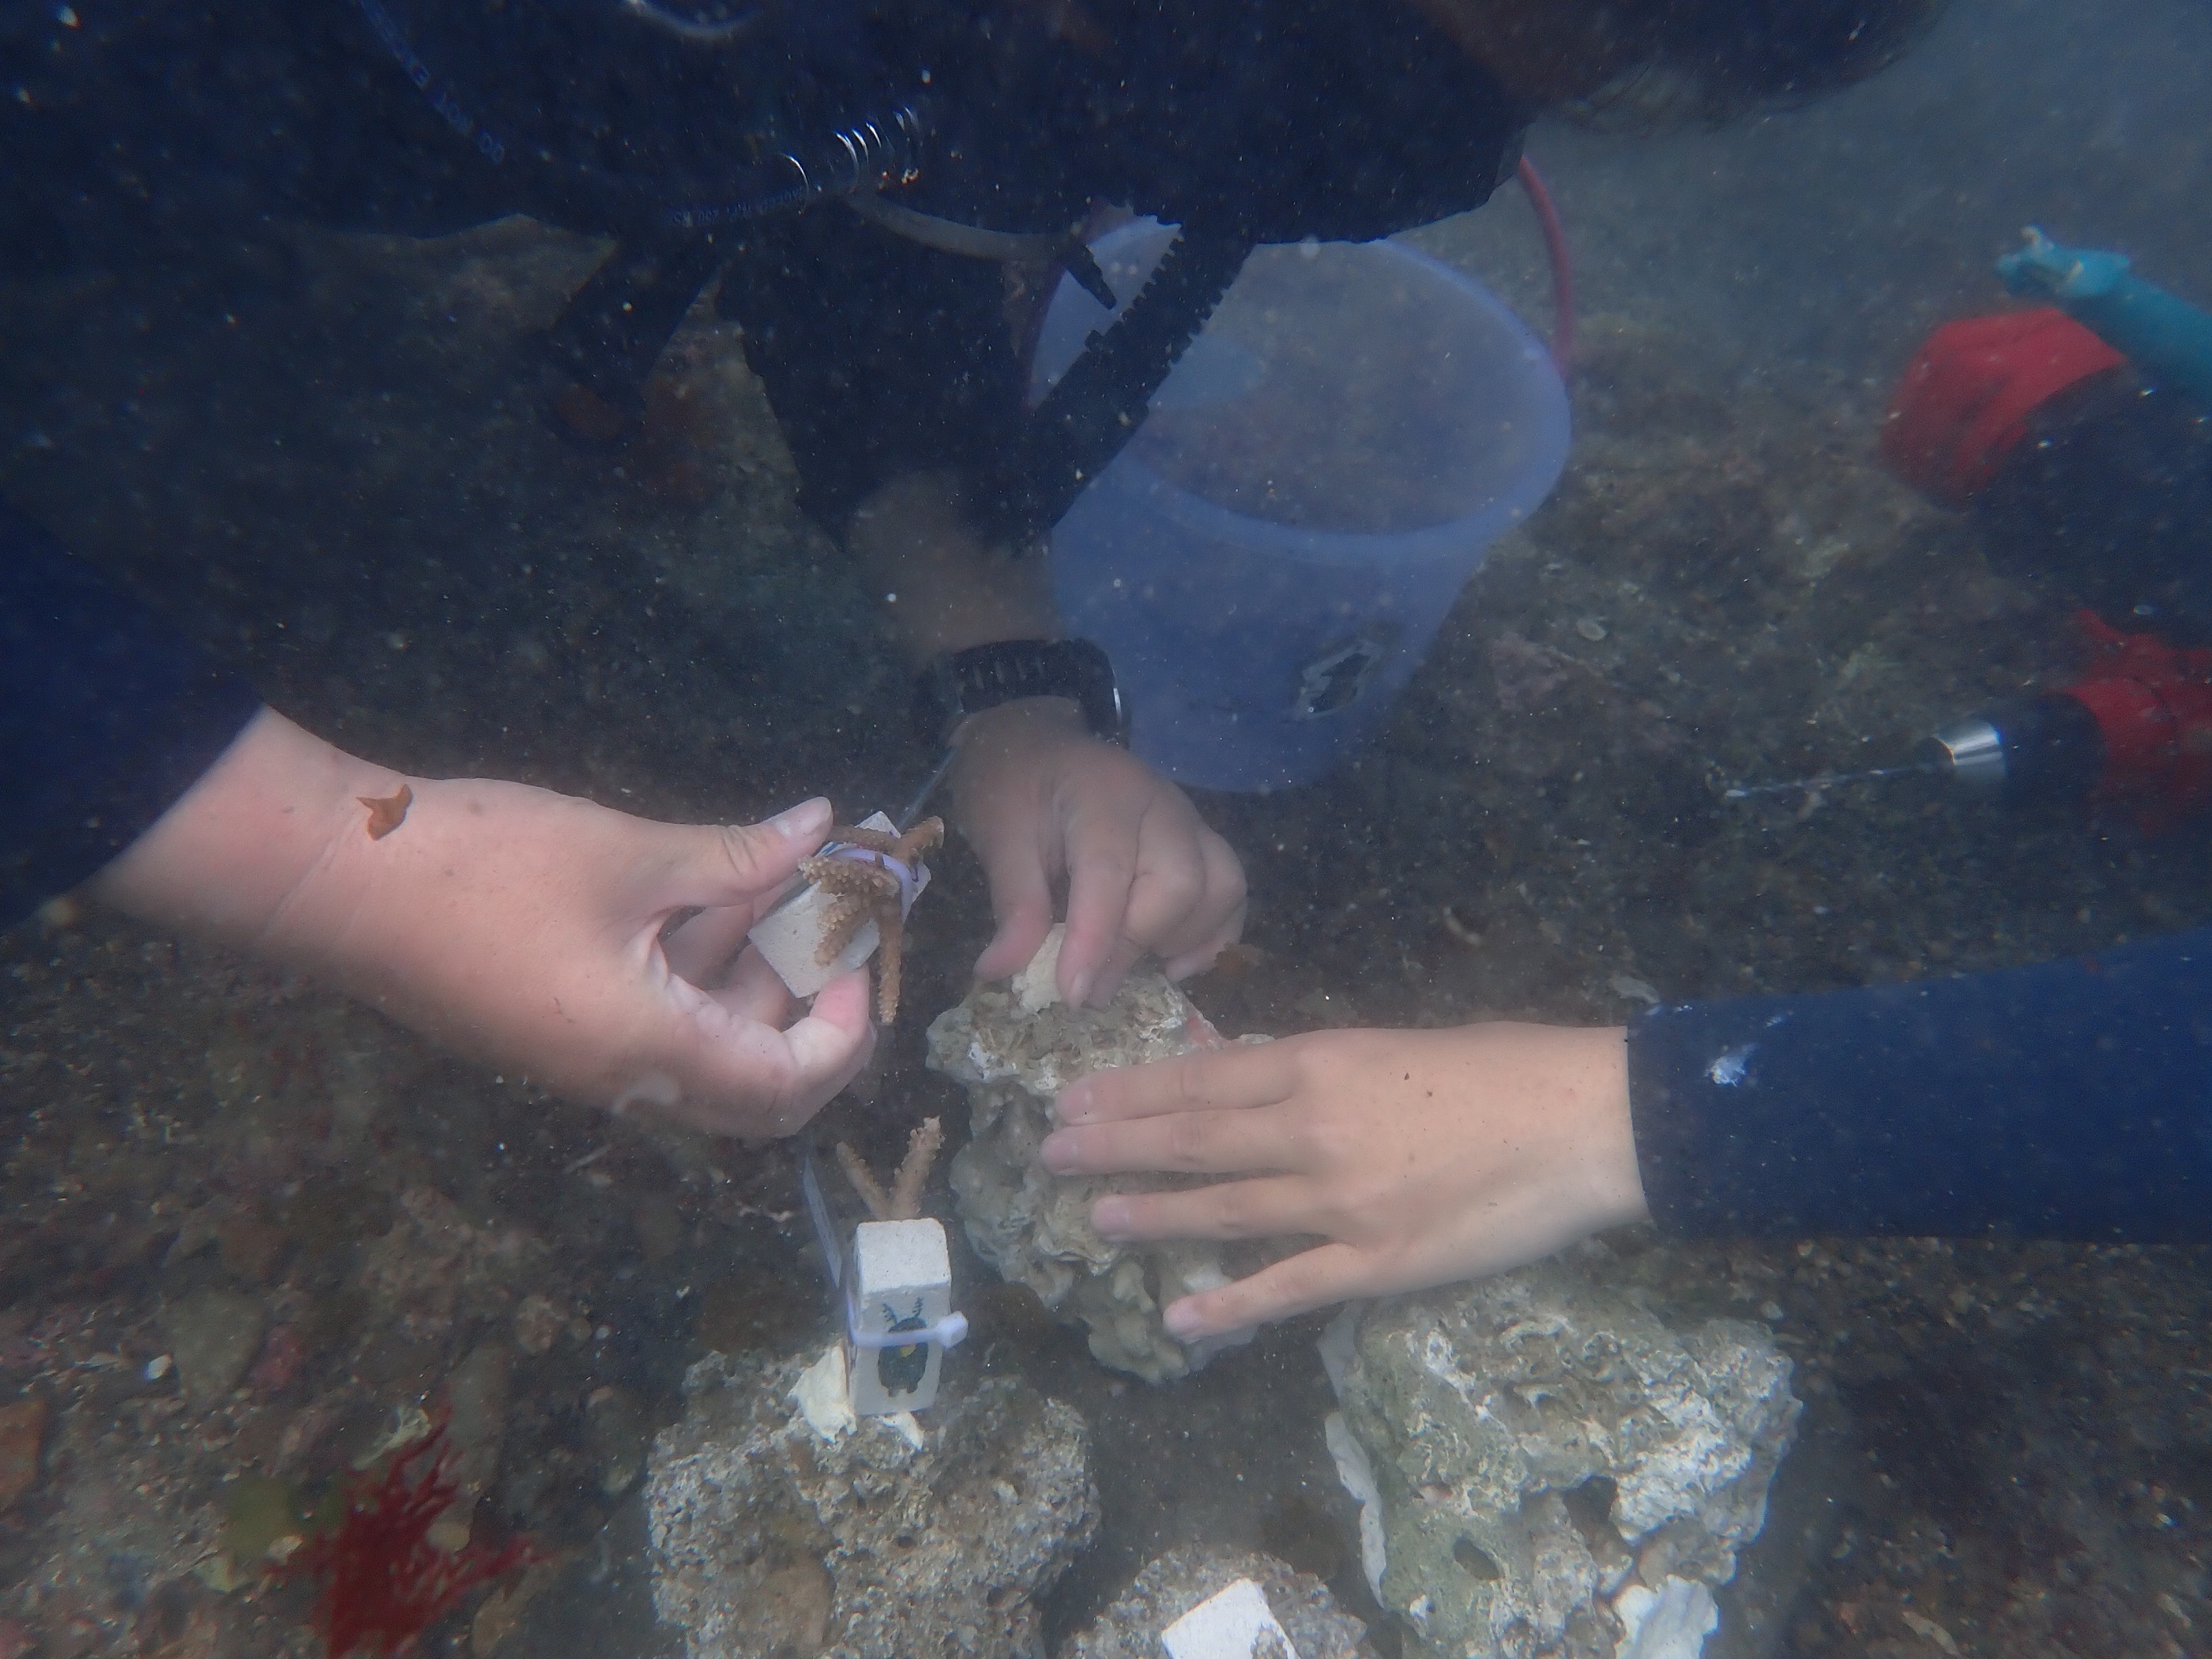 珊瑚移植工作坊限量招募25名志工   為海洋永續盡一份力...